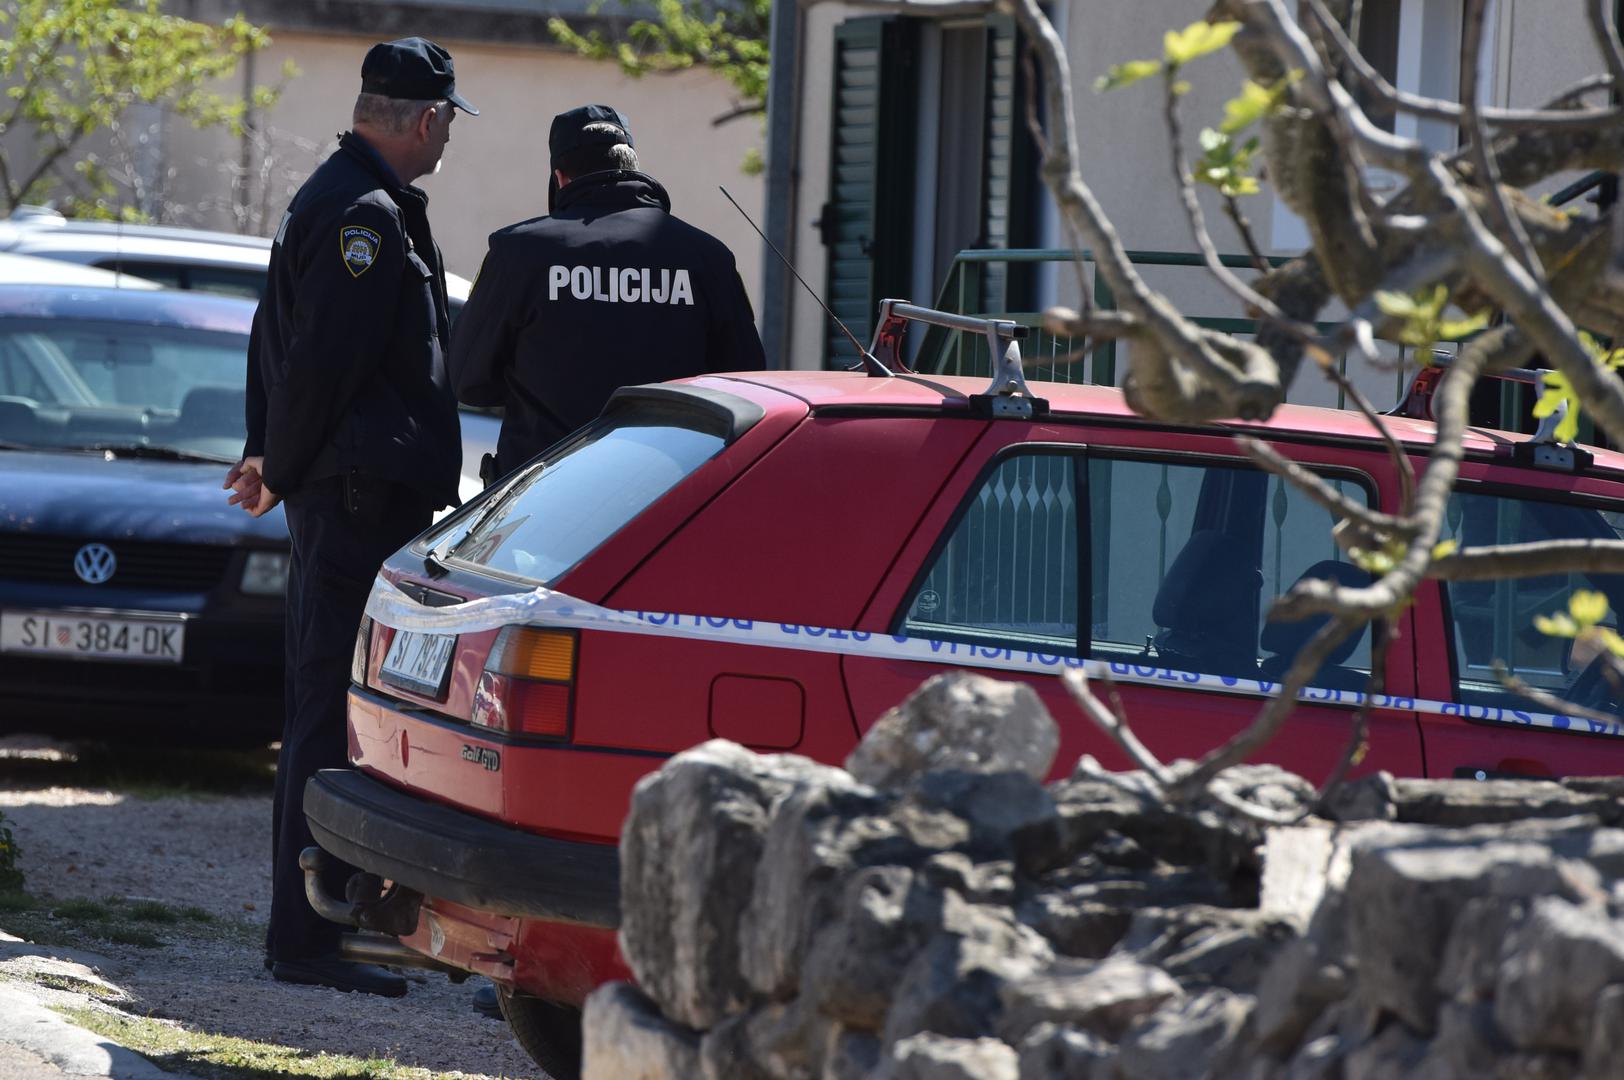 U mjestu Bilice kod Šibenika, dogodila se strašna eksplozija u garaži nakon koje je jedan muškarac teško ozlijeđen.